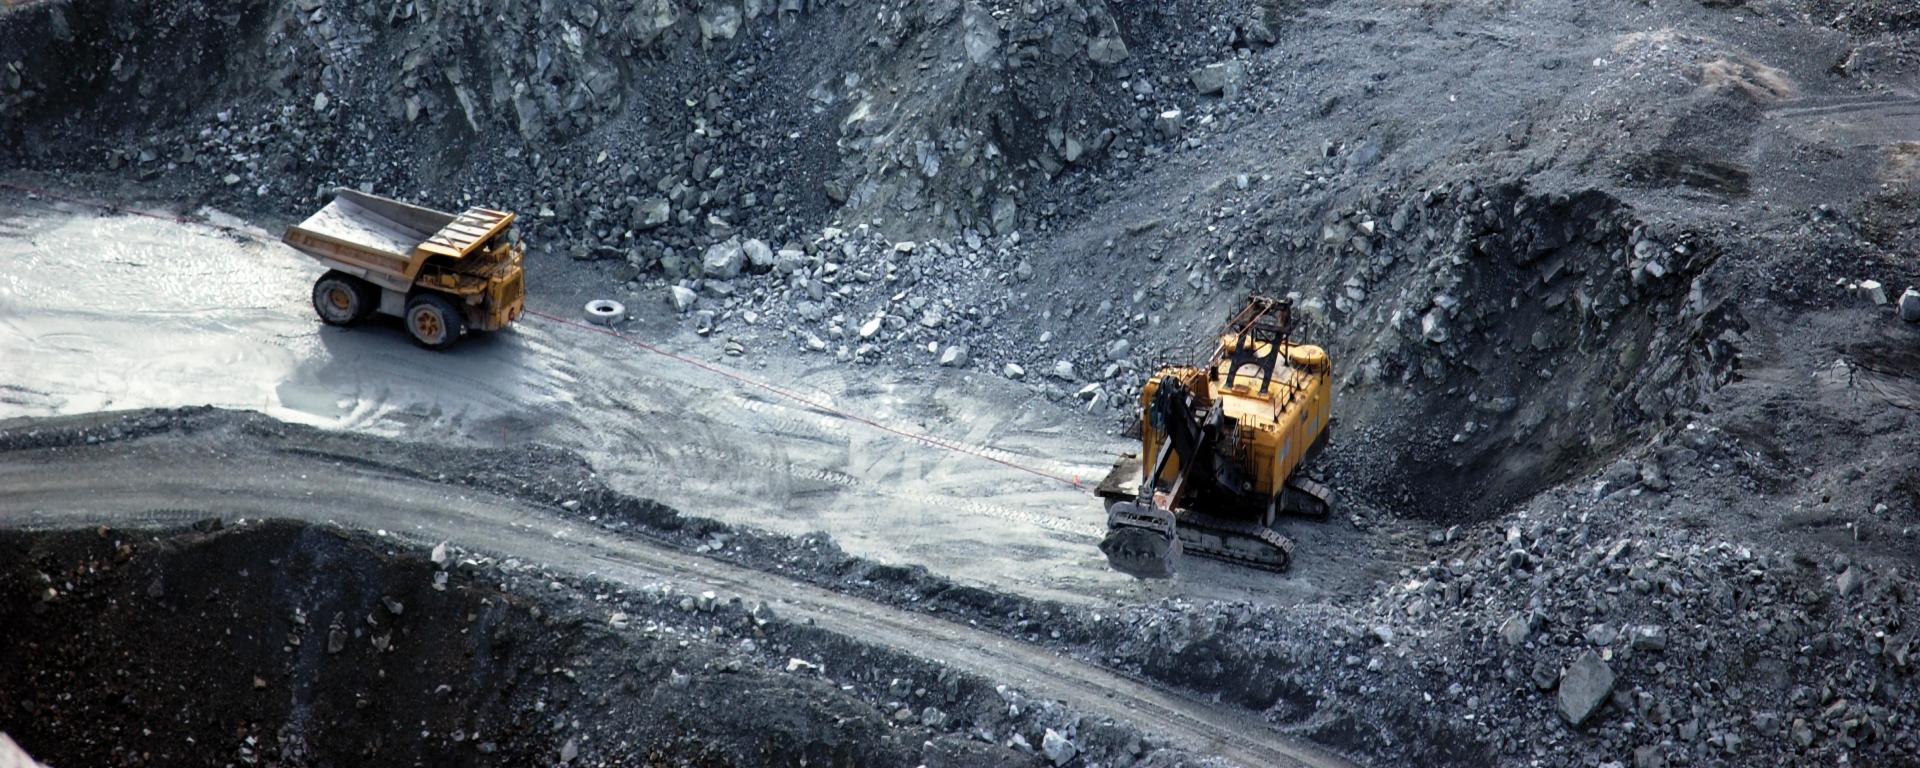 Dump trucks work in a open pit mining